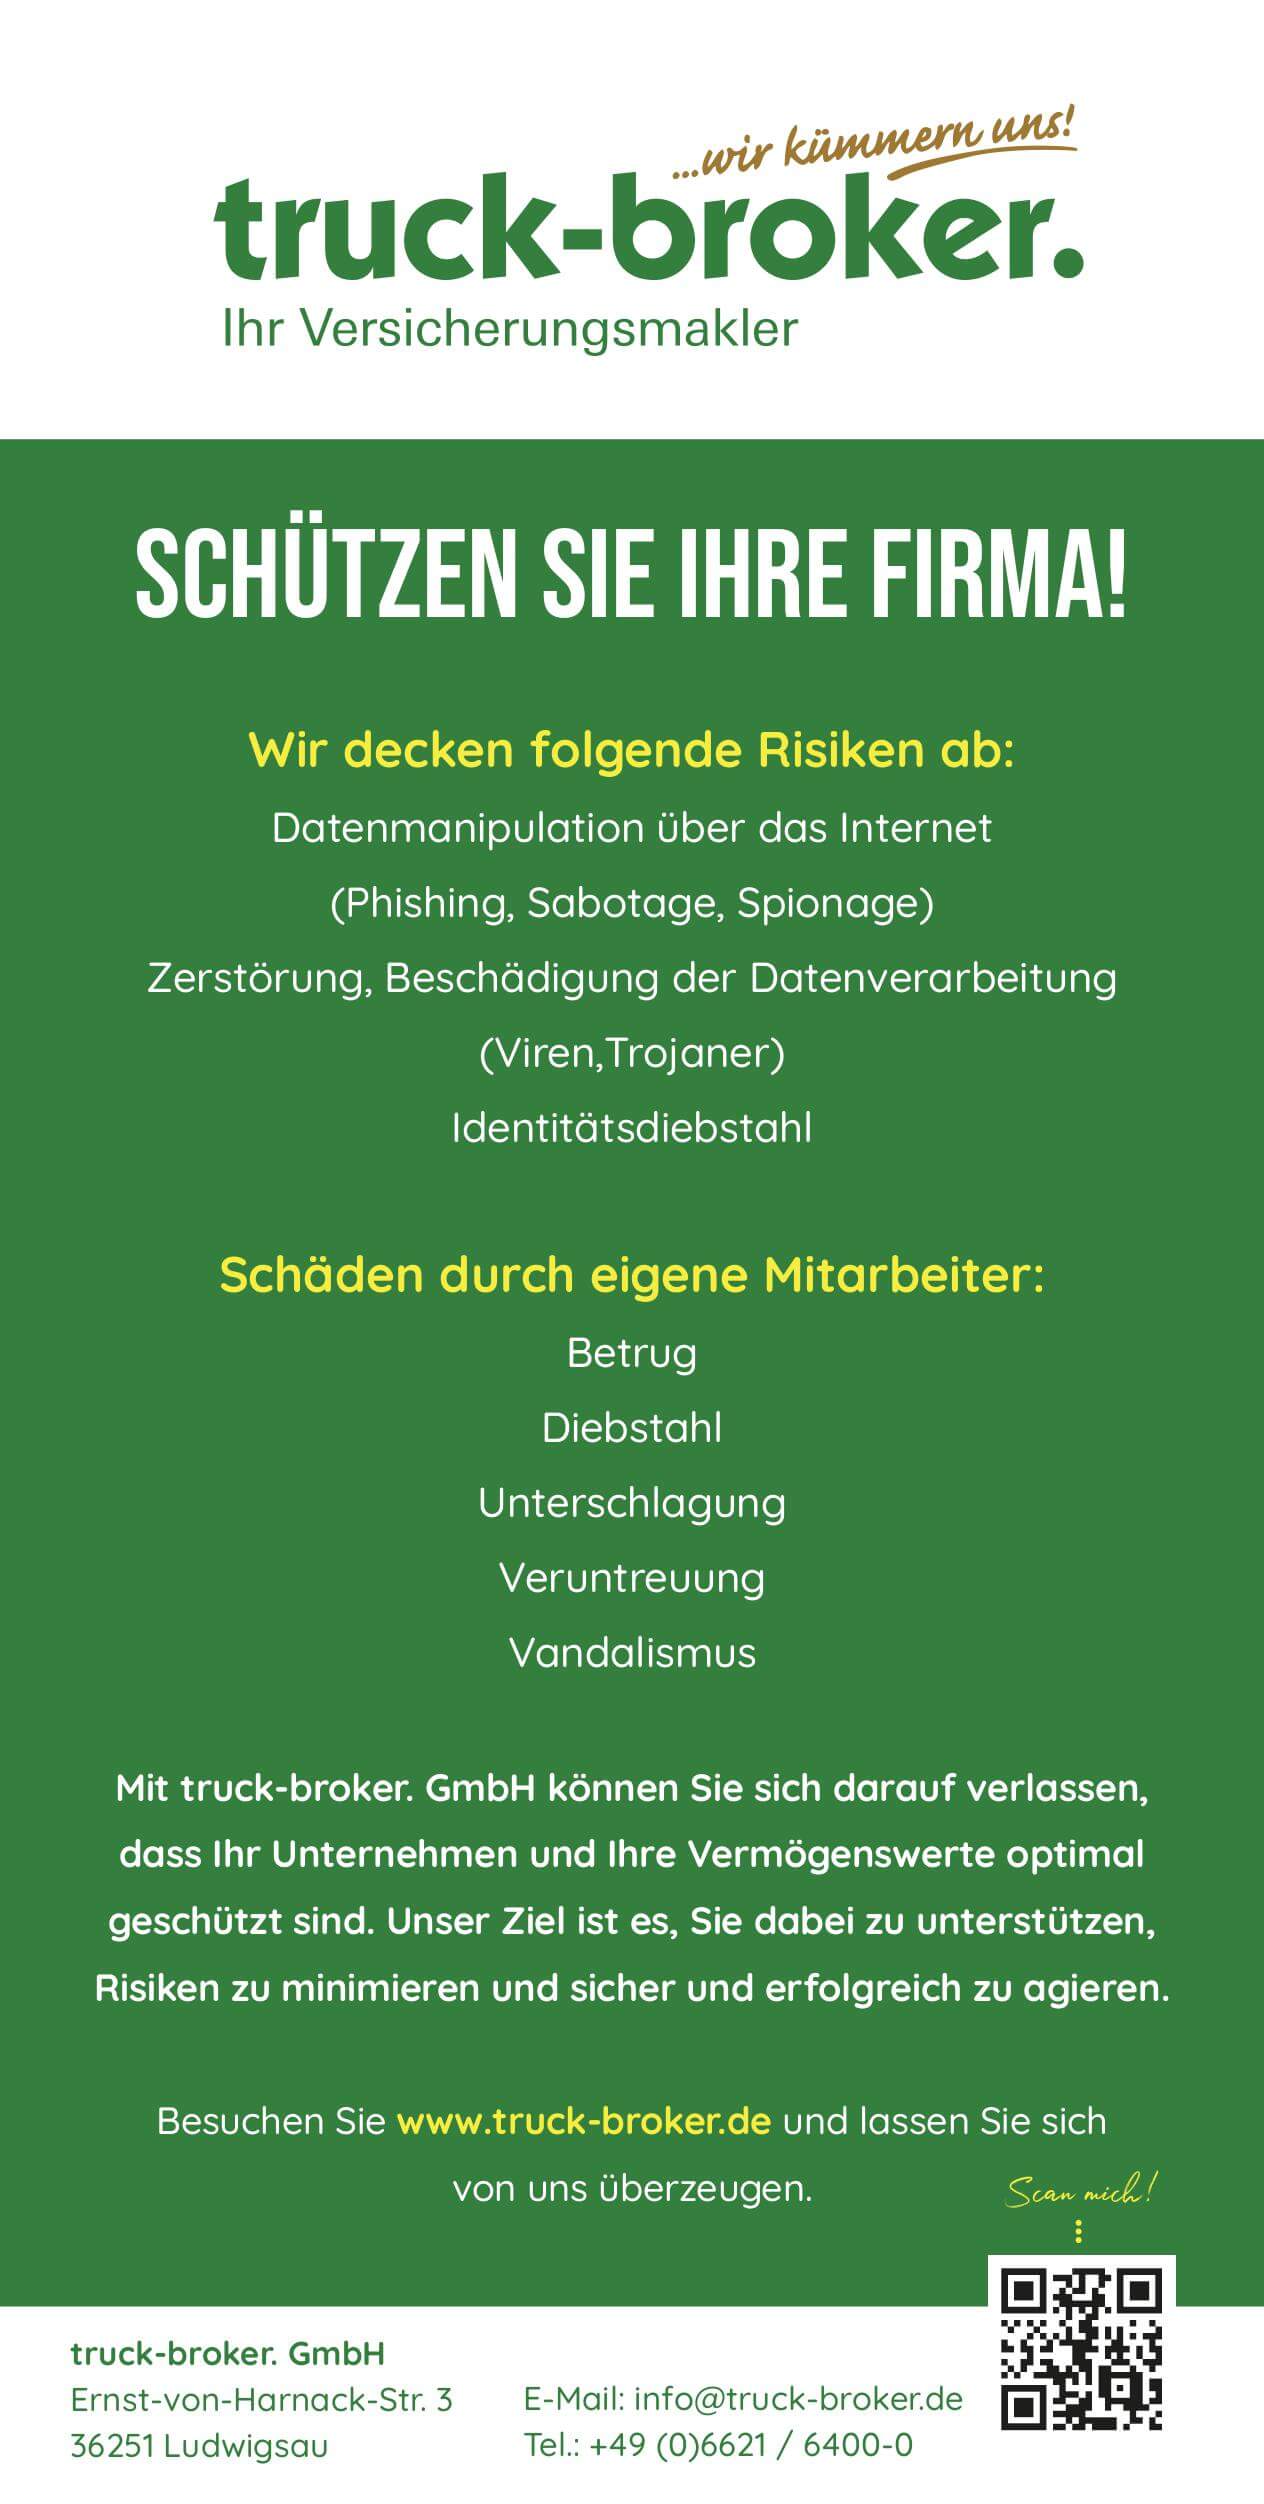 In Kombination mit der RMC Tankkarte und den Versicherungsprodukten der truck-broker GmbH genießen Sie umfassenden Schutz und Sicherheit für Ihr Unternehmen.